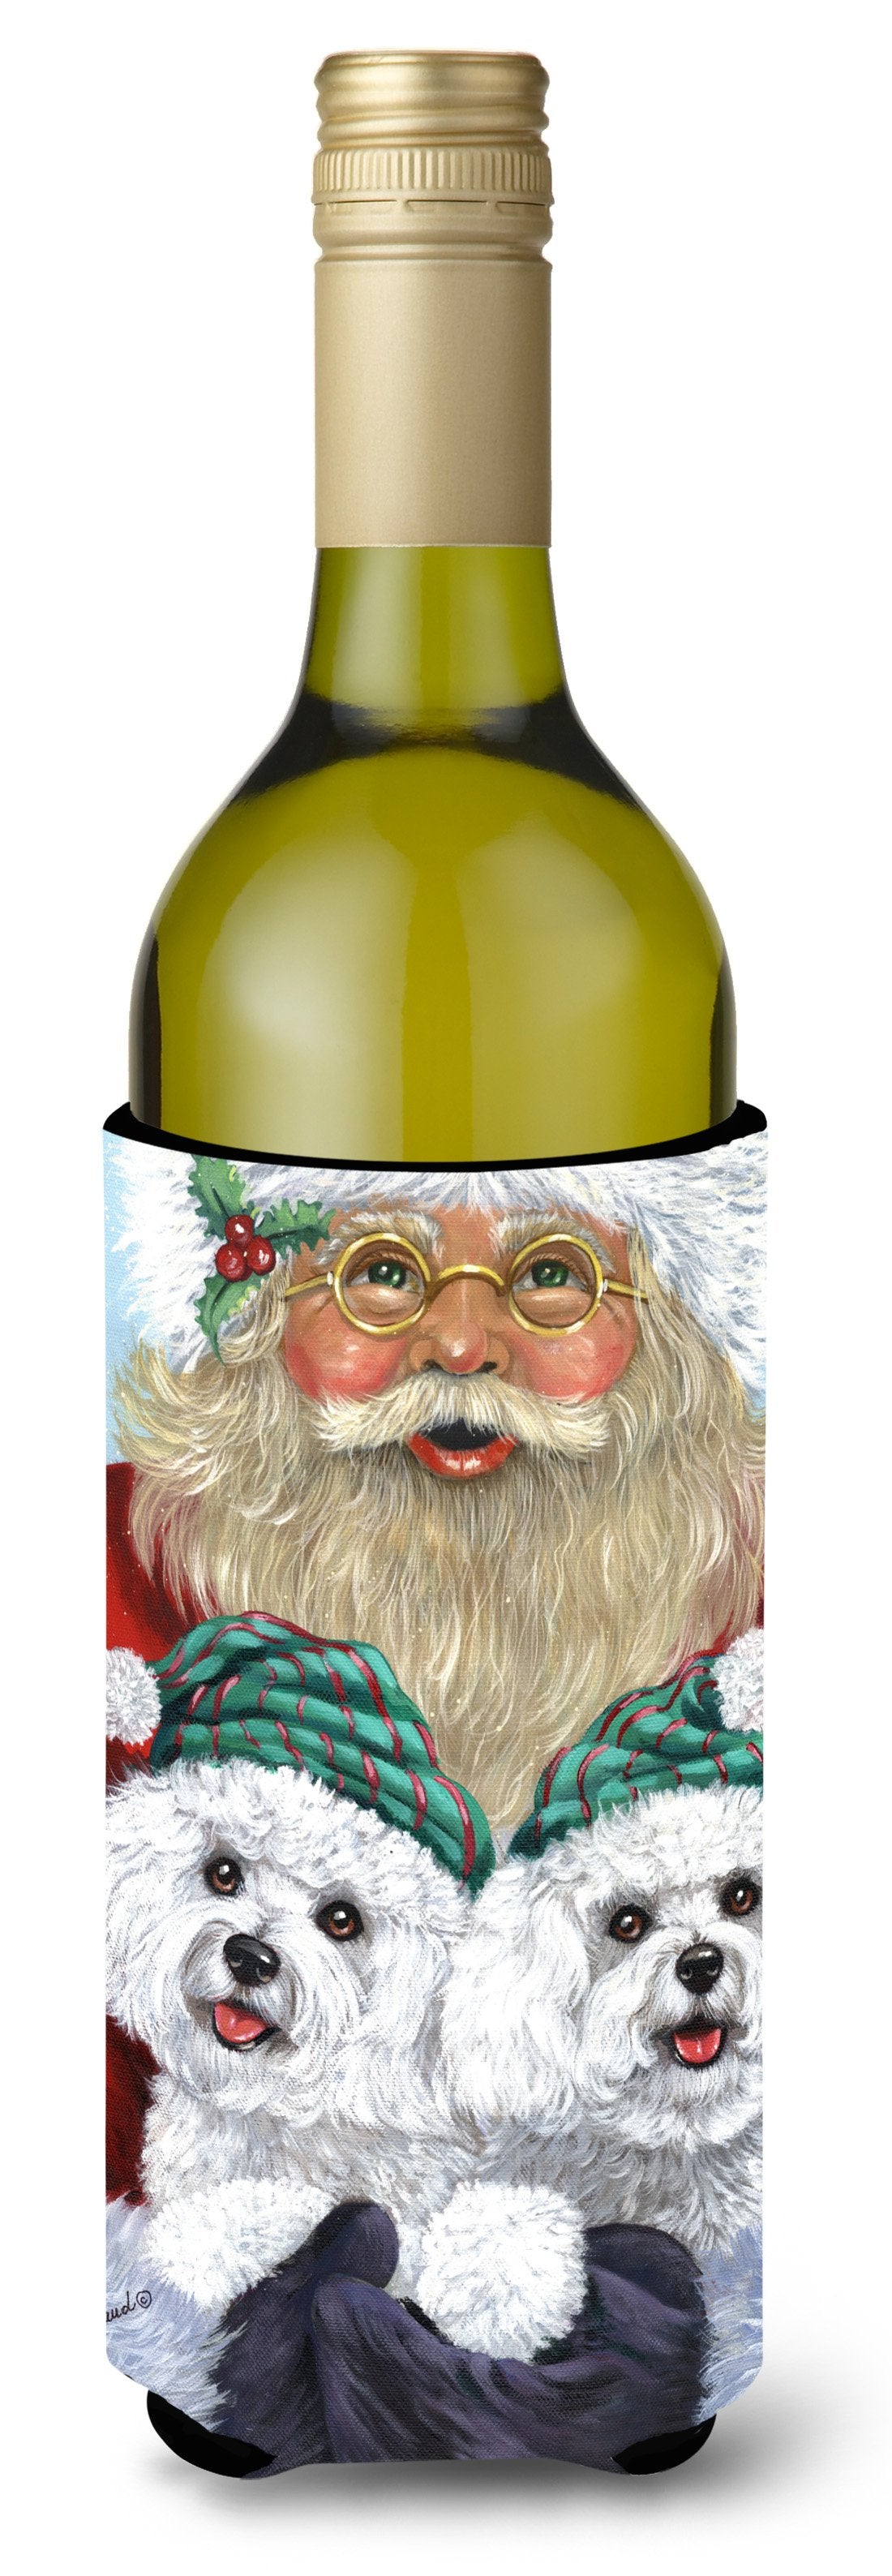 Bichon Frise Santa Christmas Wine Bottle Hugger PPP3024LITERK by Caroline's Treasures